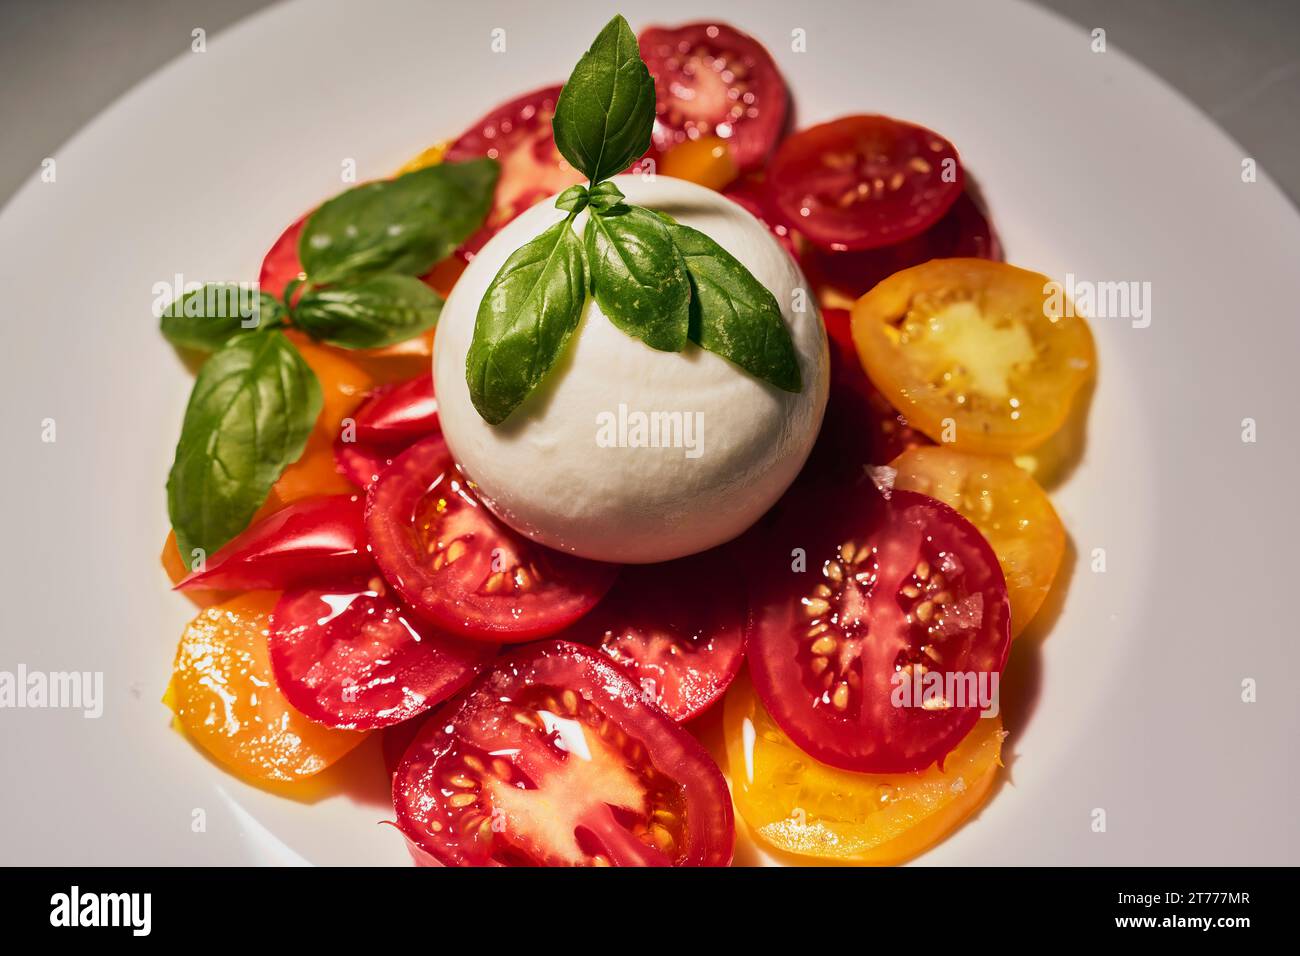 Close up nature morte salade de caprese fraîche avec tomates juteuses, mozzarella fouettée et basilic frais Banque D'Images